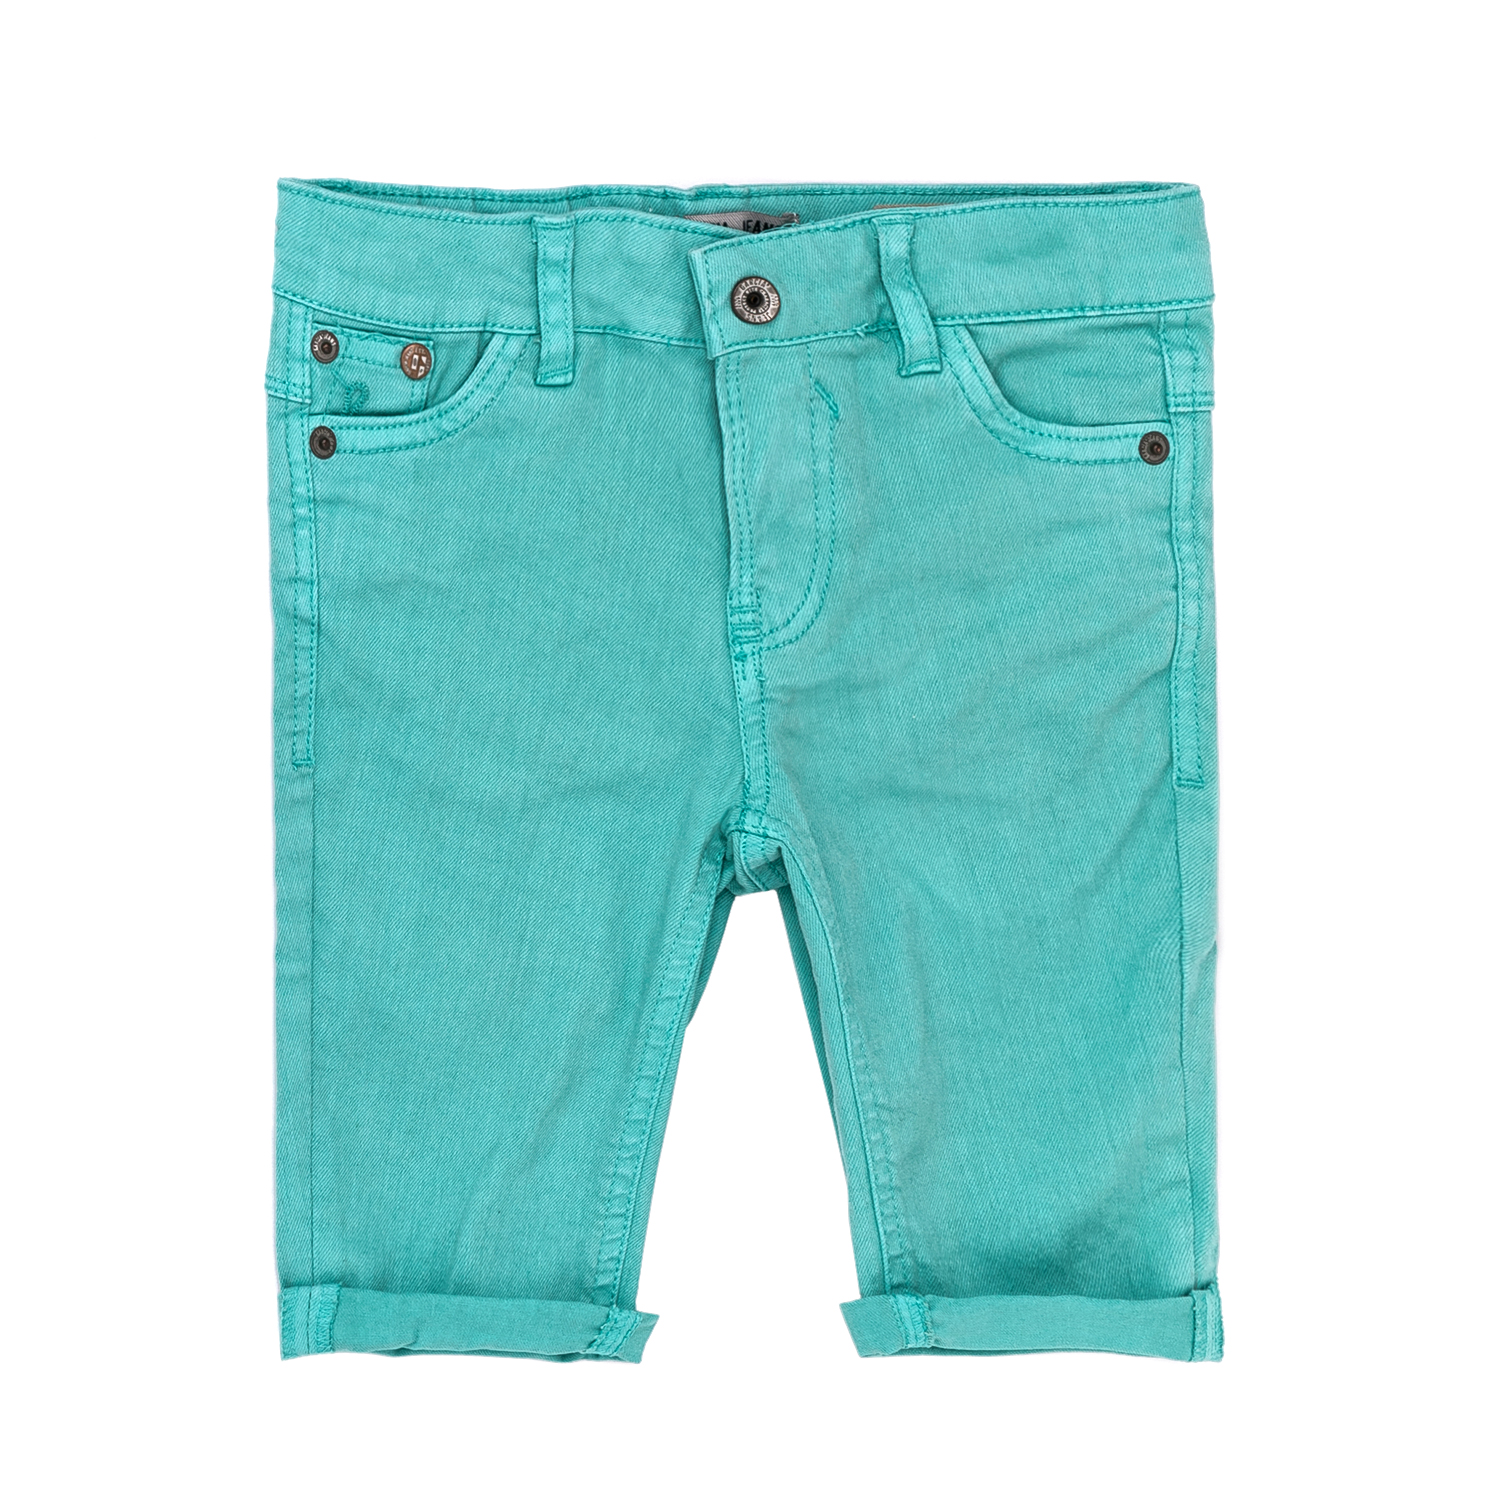 Παιδικά/Girls/Ρούχα/Παντελόνια GARCIA JEANS - Παιδικό παντελόνι Garcia Jeans τιρκουάζ